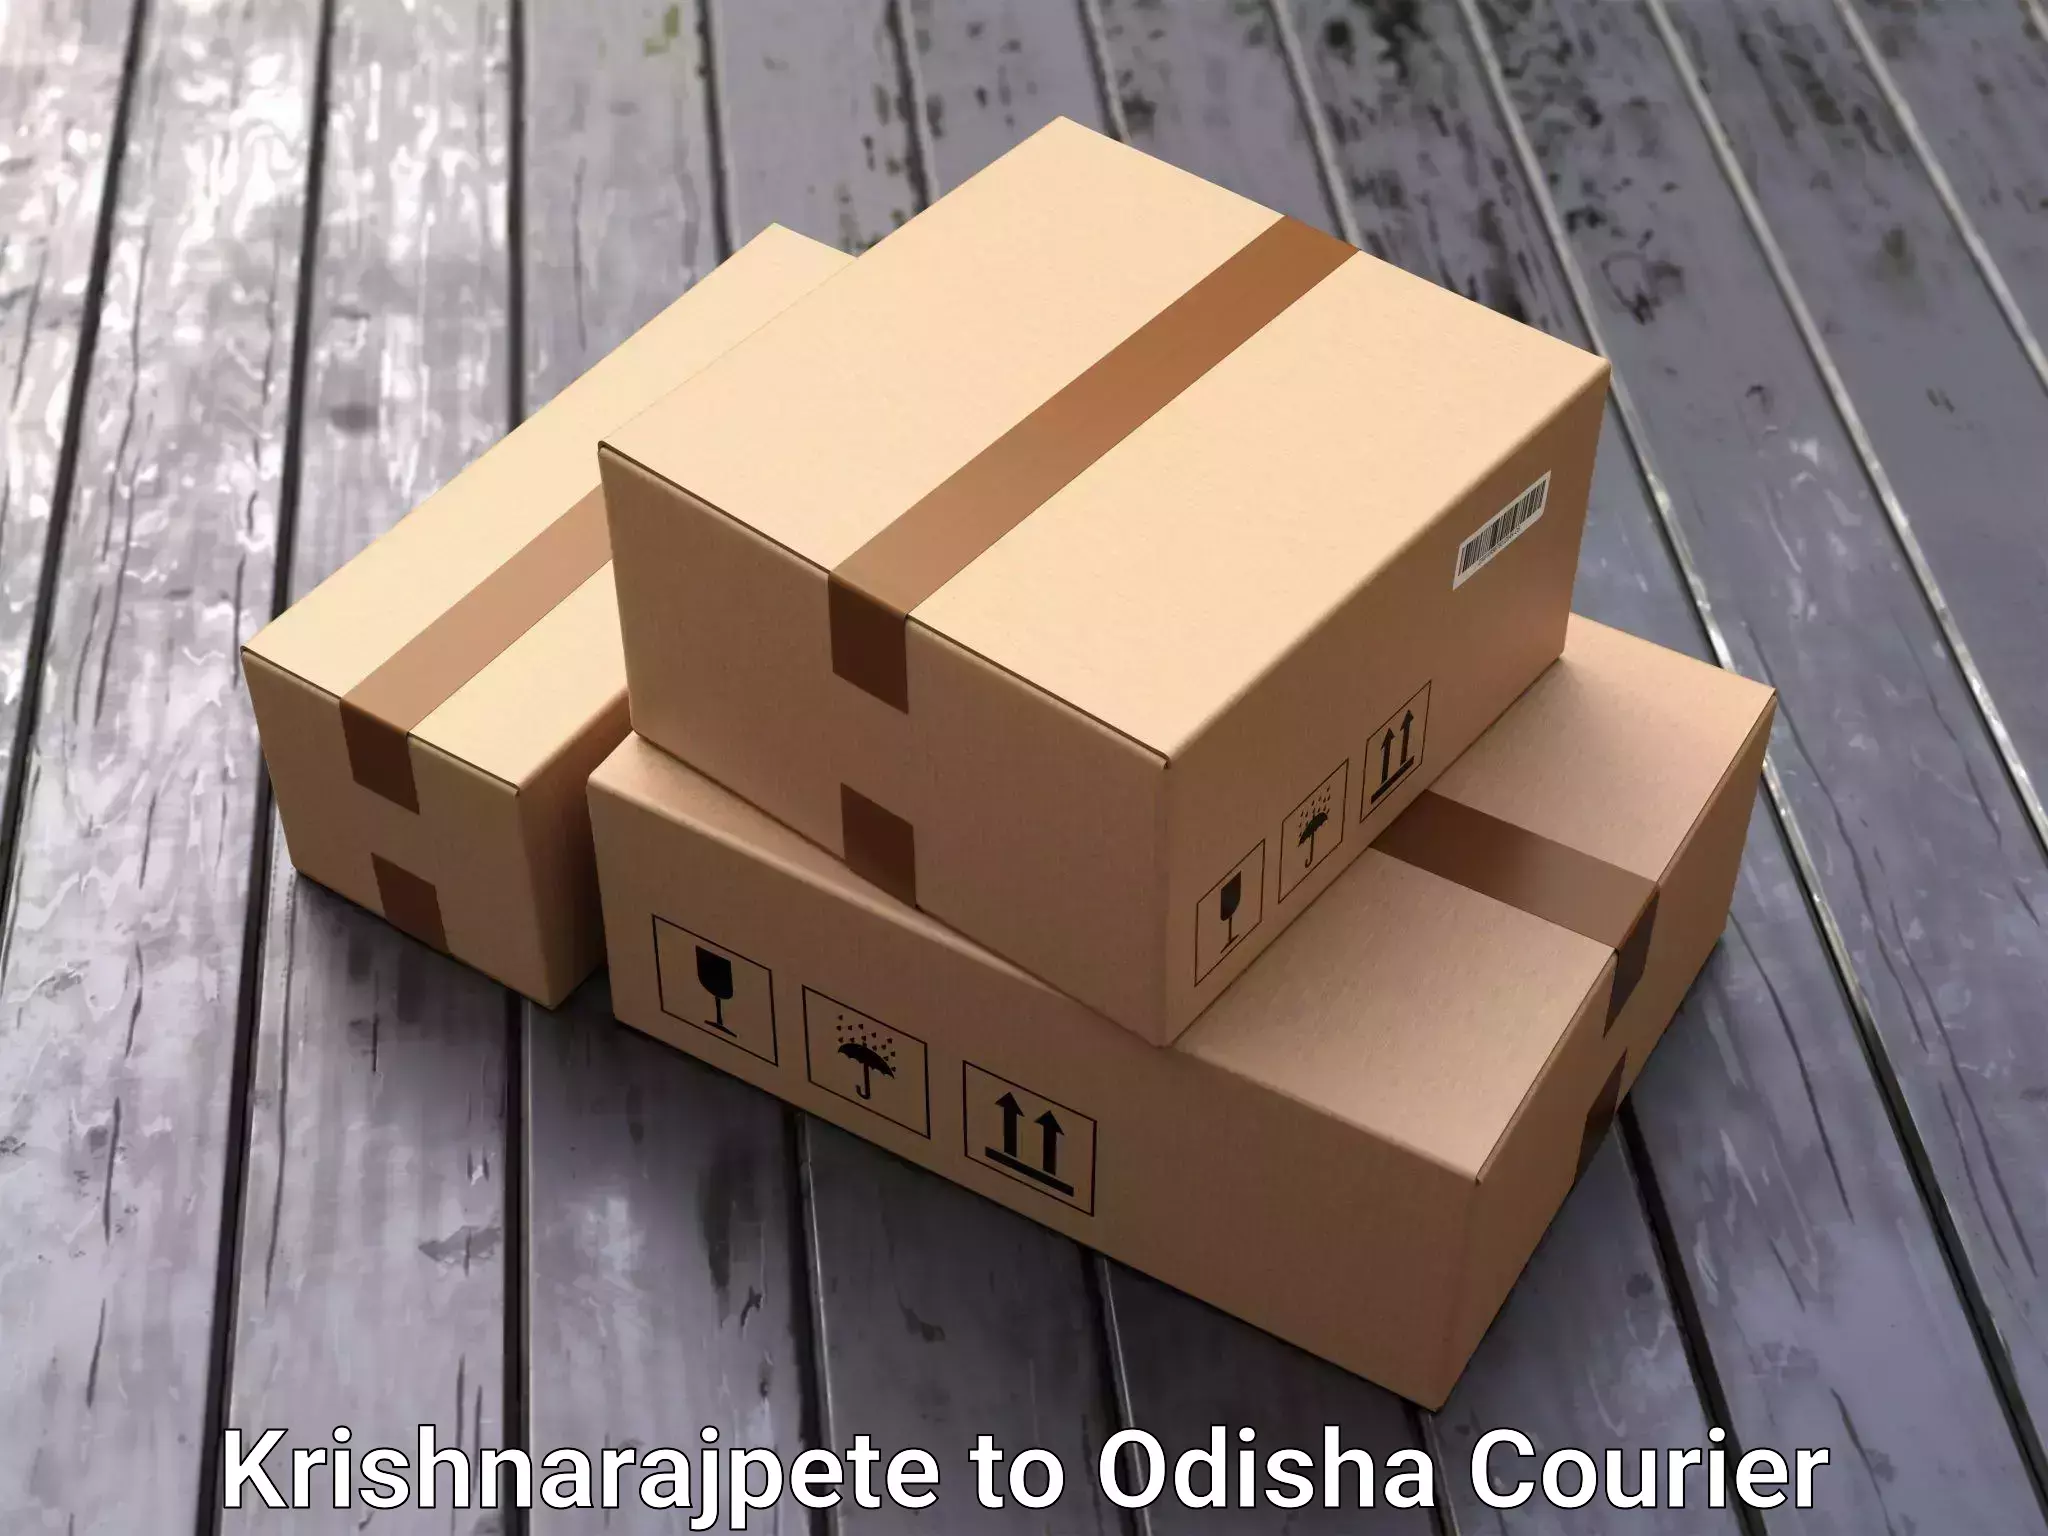 Furniture transport specialists Krishnarajpete to Odisha